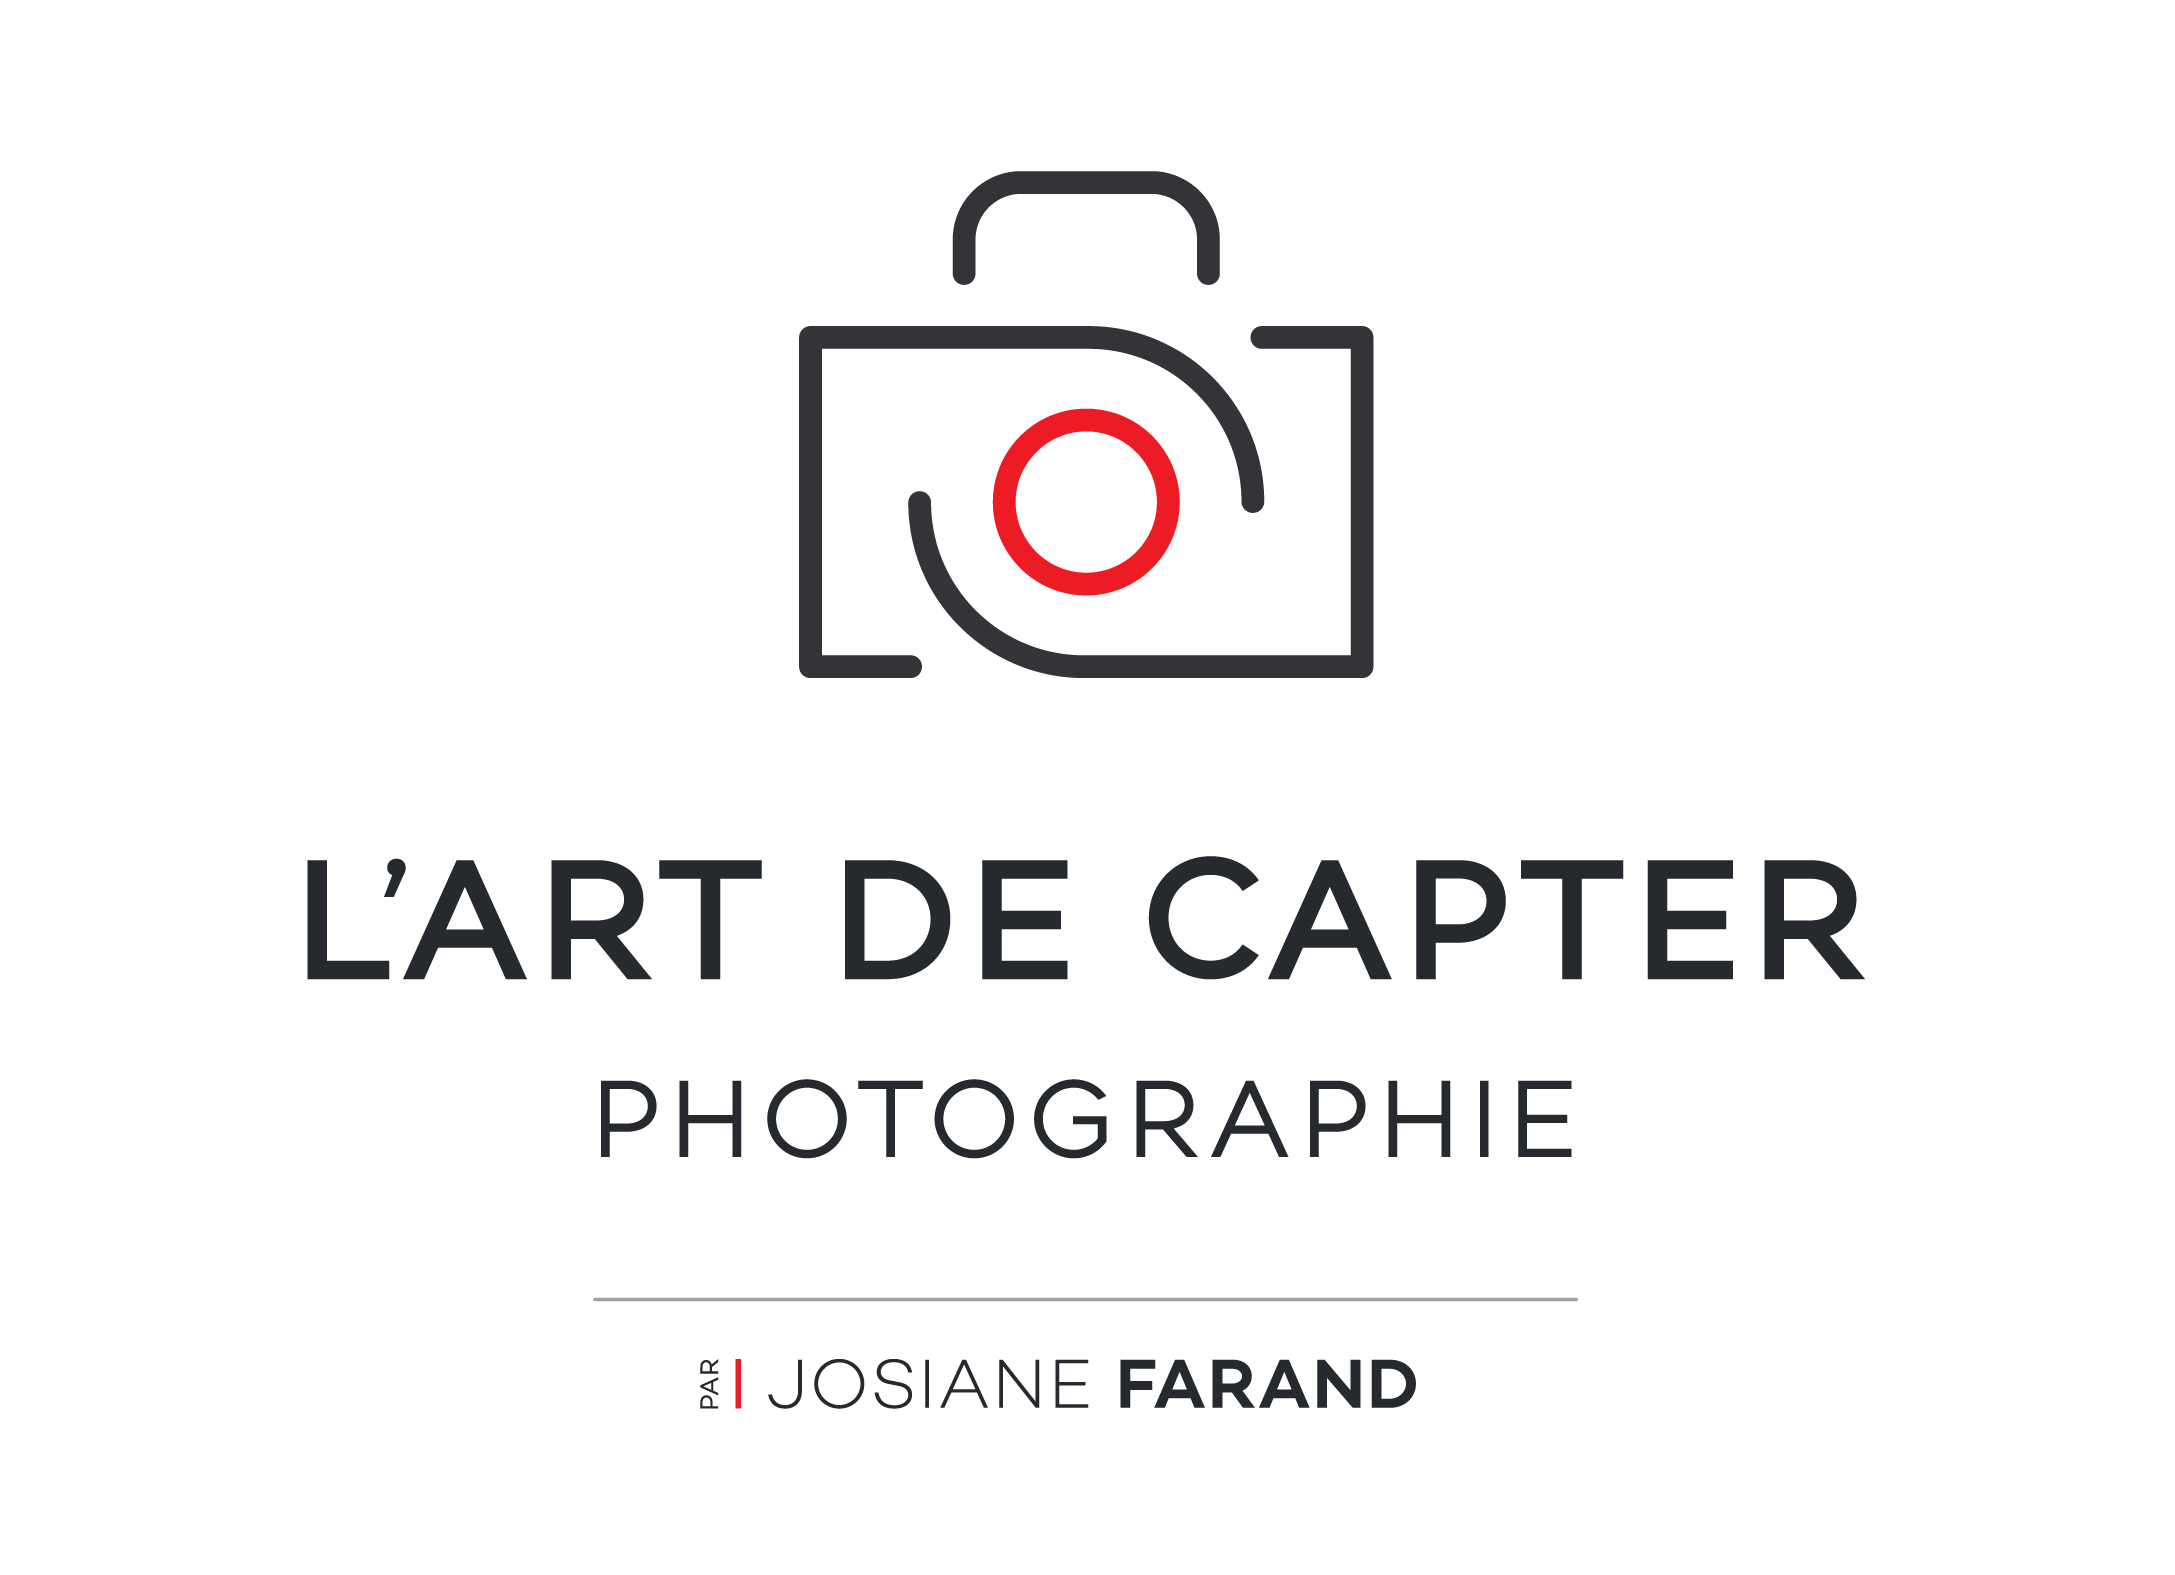 L’ART DE CAPTER – PAR JOSIANE FARAND